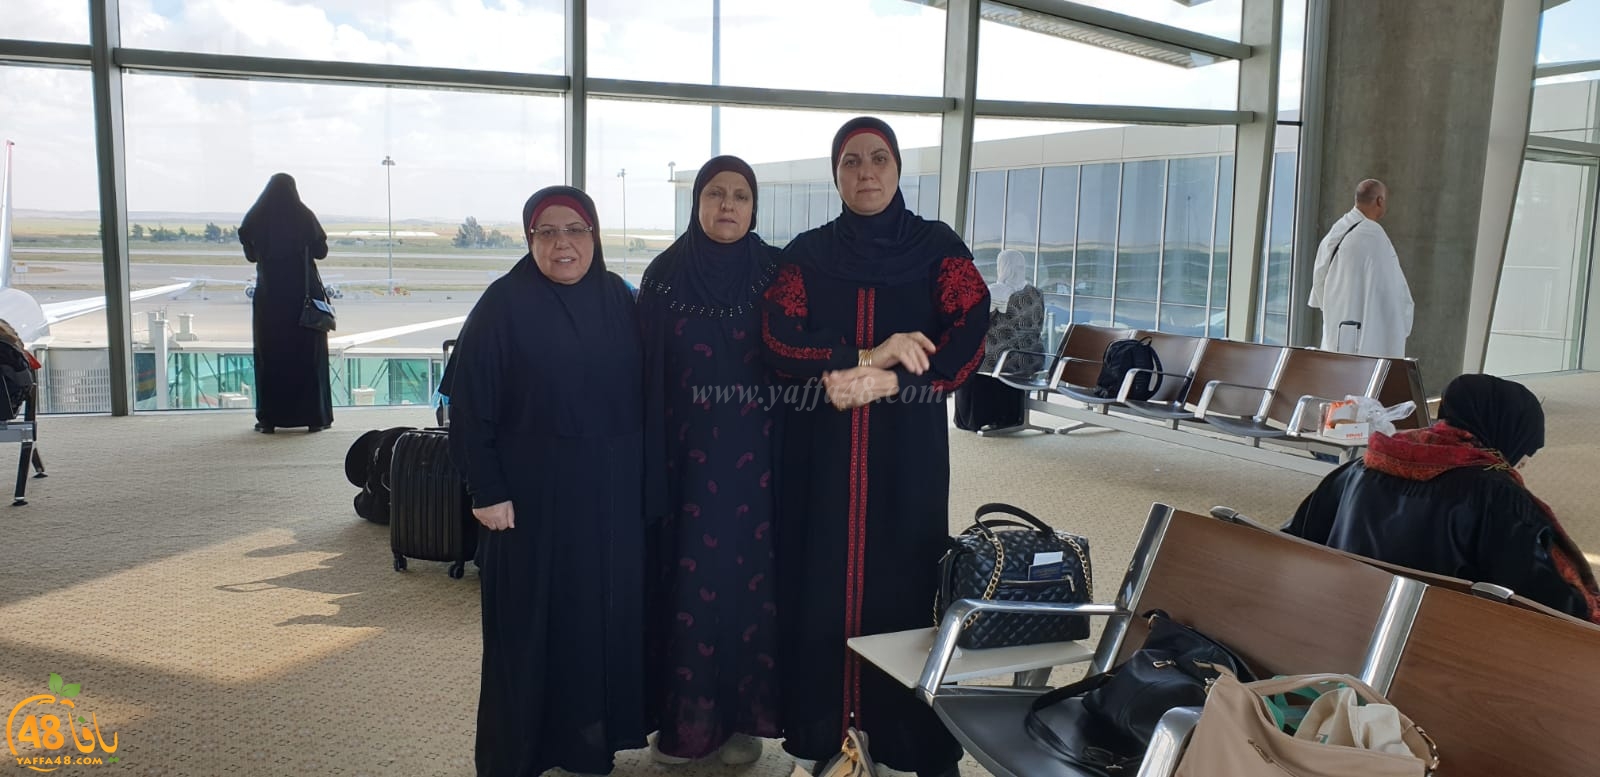 بالصور: معتمرو مدينة يافا يصلون إلى مكة المكرّمة لأداء عمرة الربيع 